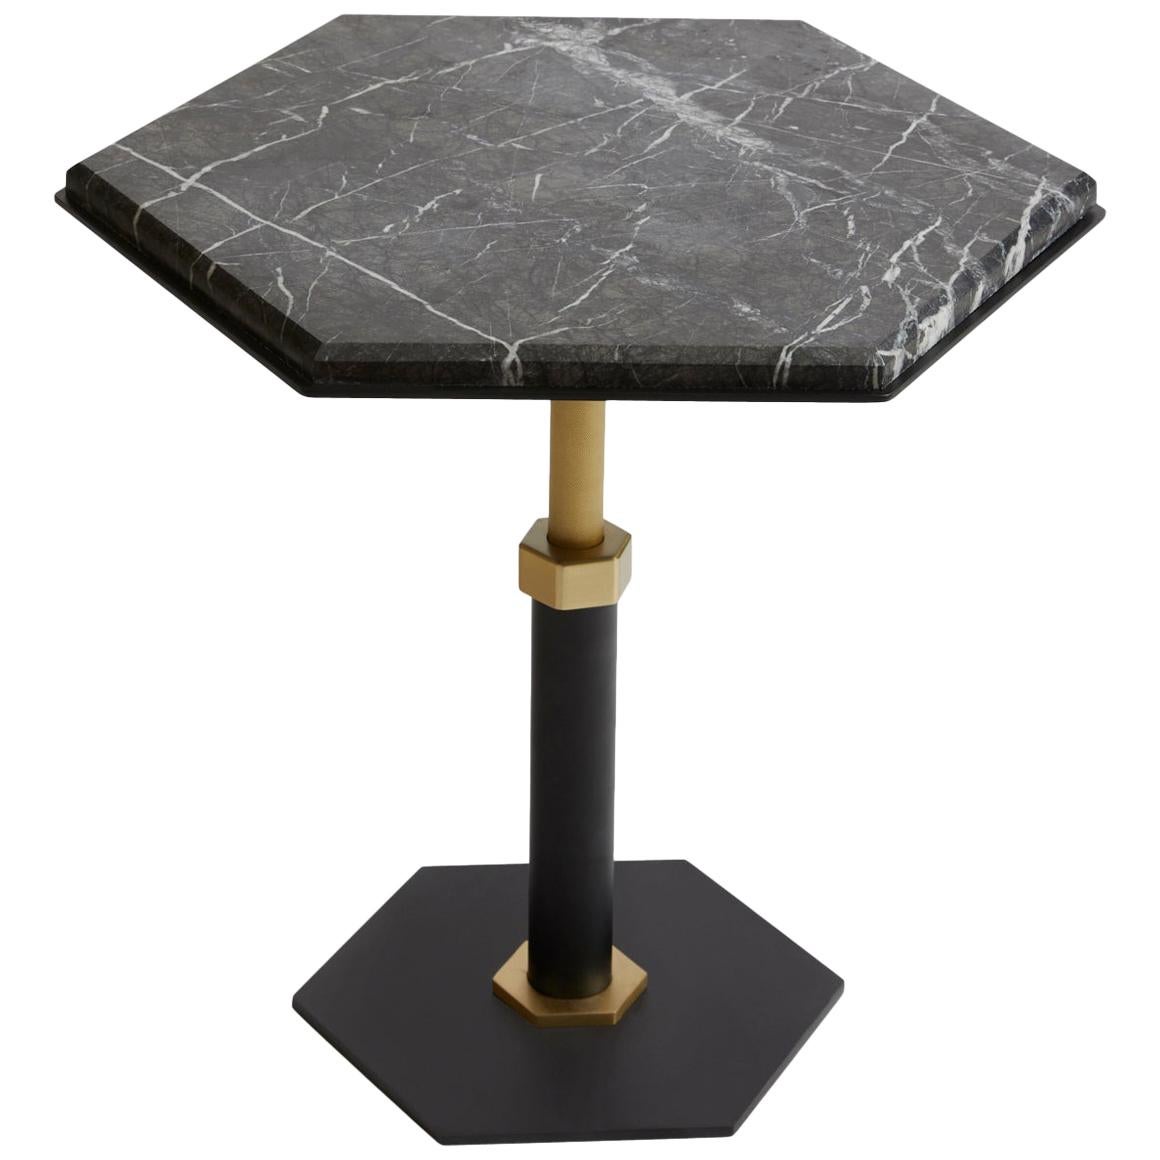 Pedestal Hexagonal Side Table in Black Steel & Satin Brass Base by Gabriel Scott